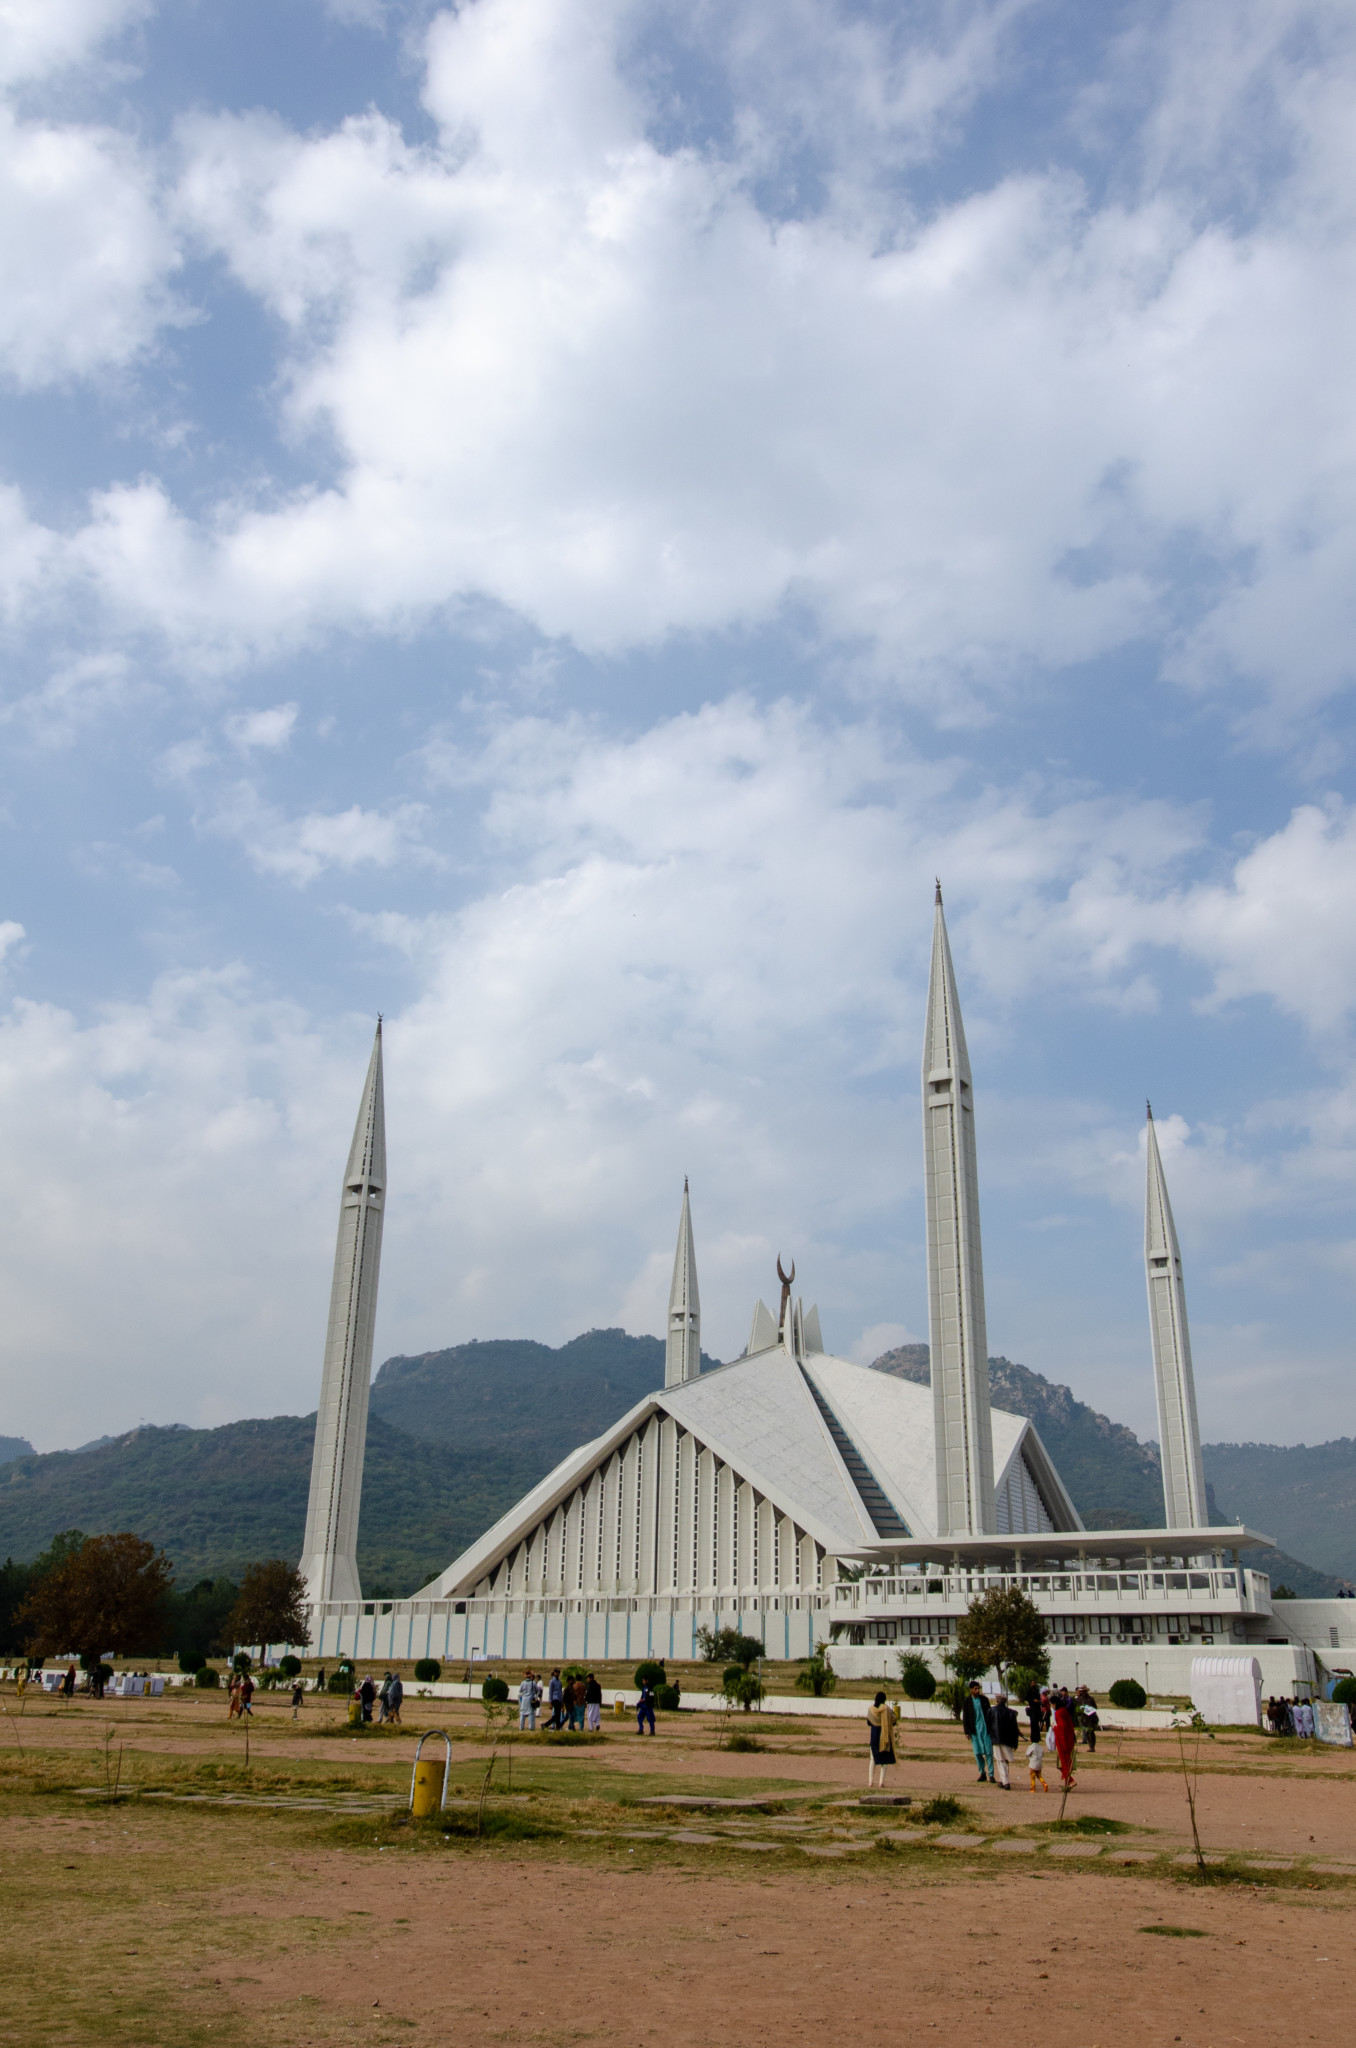 Die Pakistan Rundreise startet meist in Islamabad an der Faisal Moschee